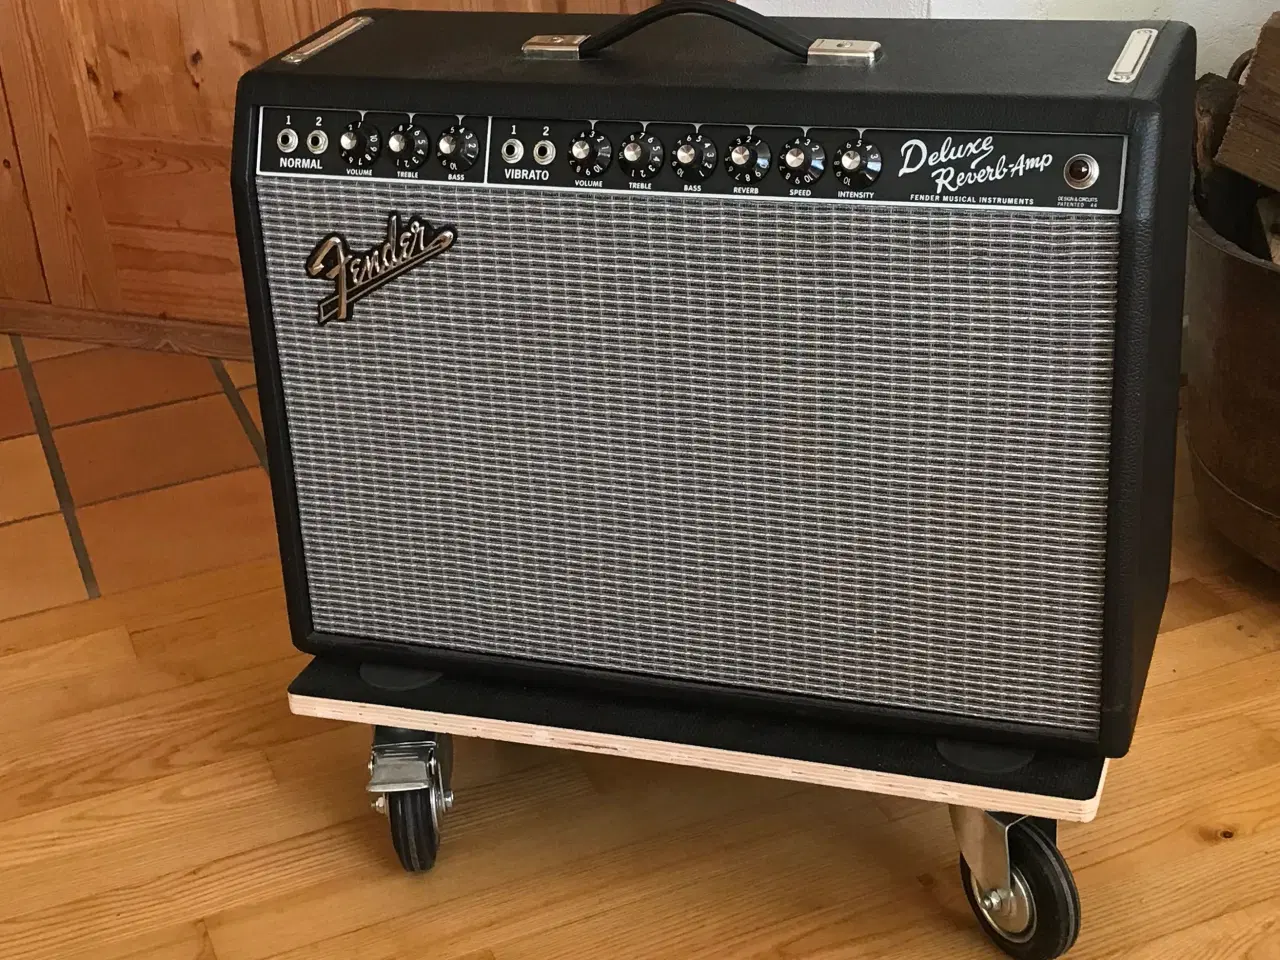 Billede 1 - Fender 65 Deluxe Reverb reissue